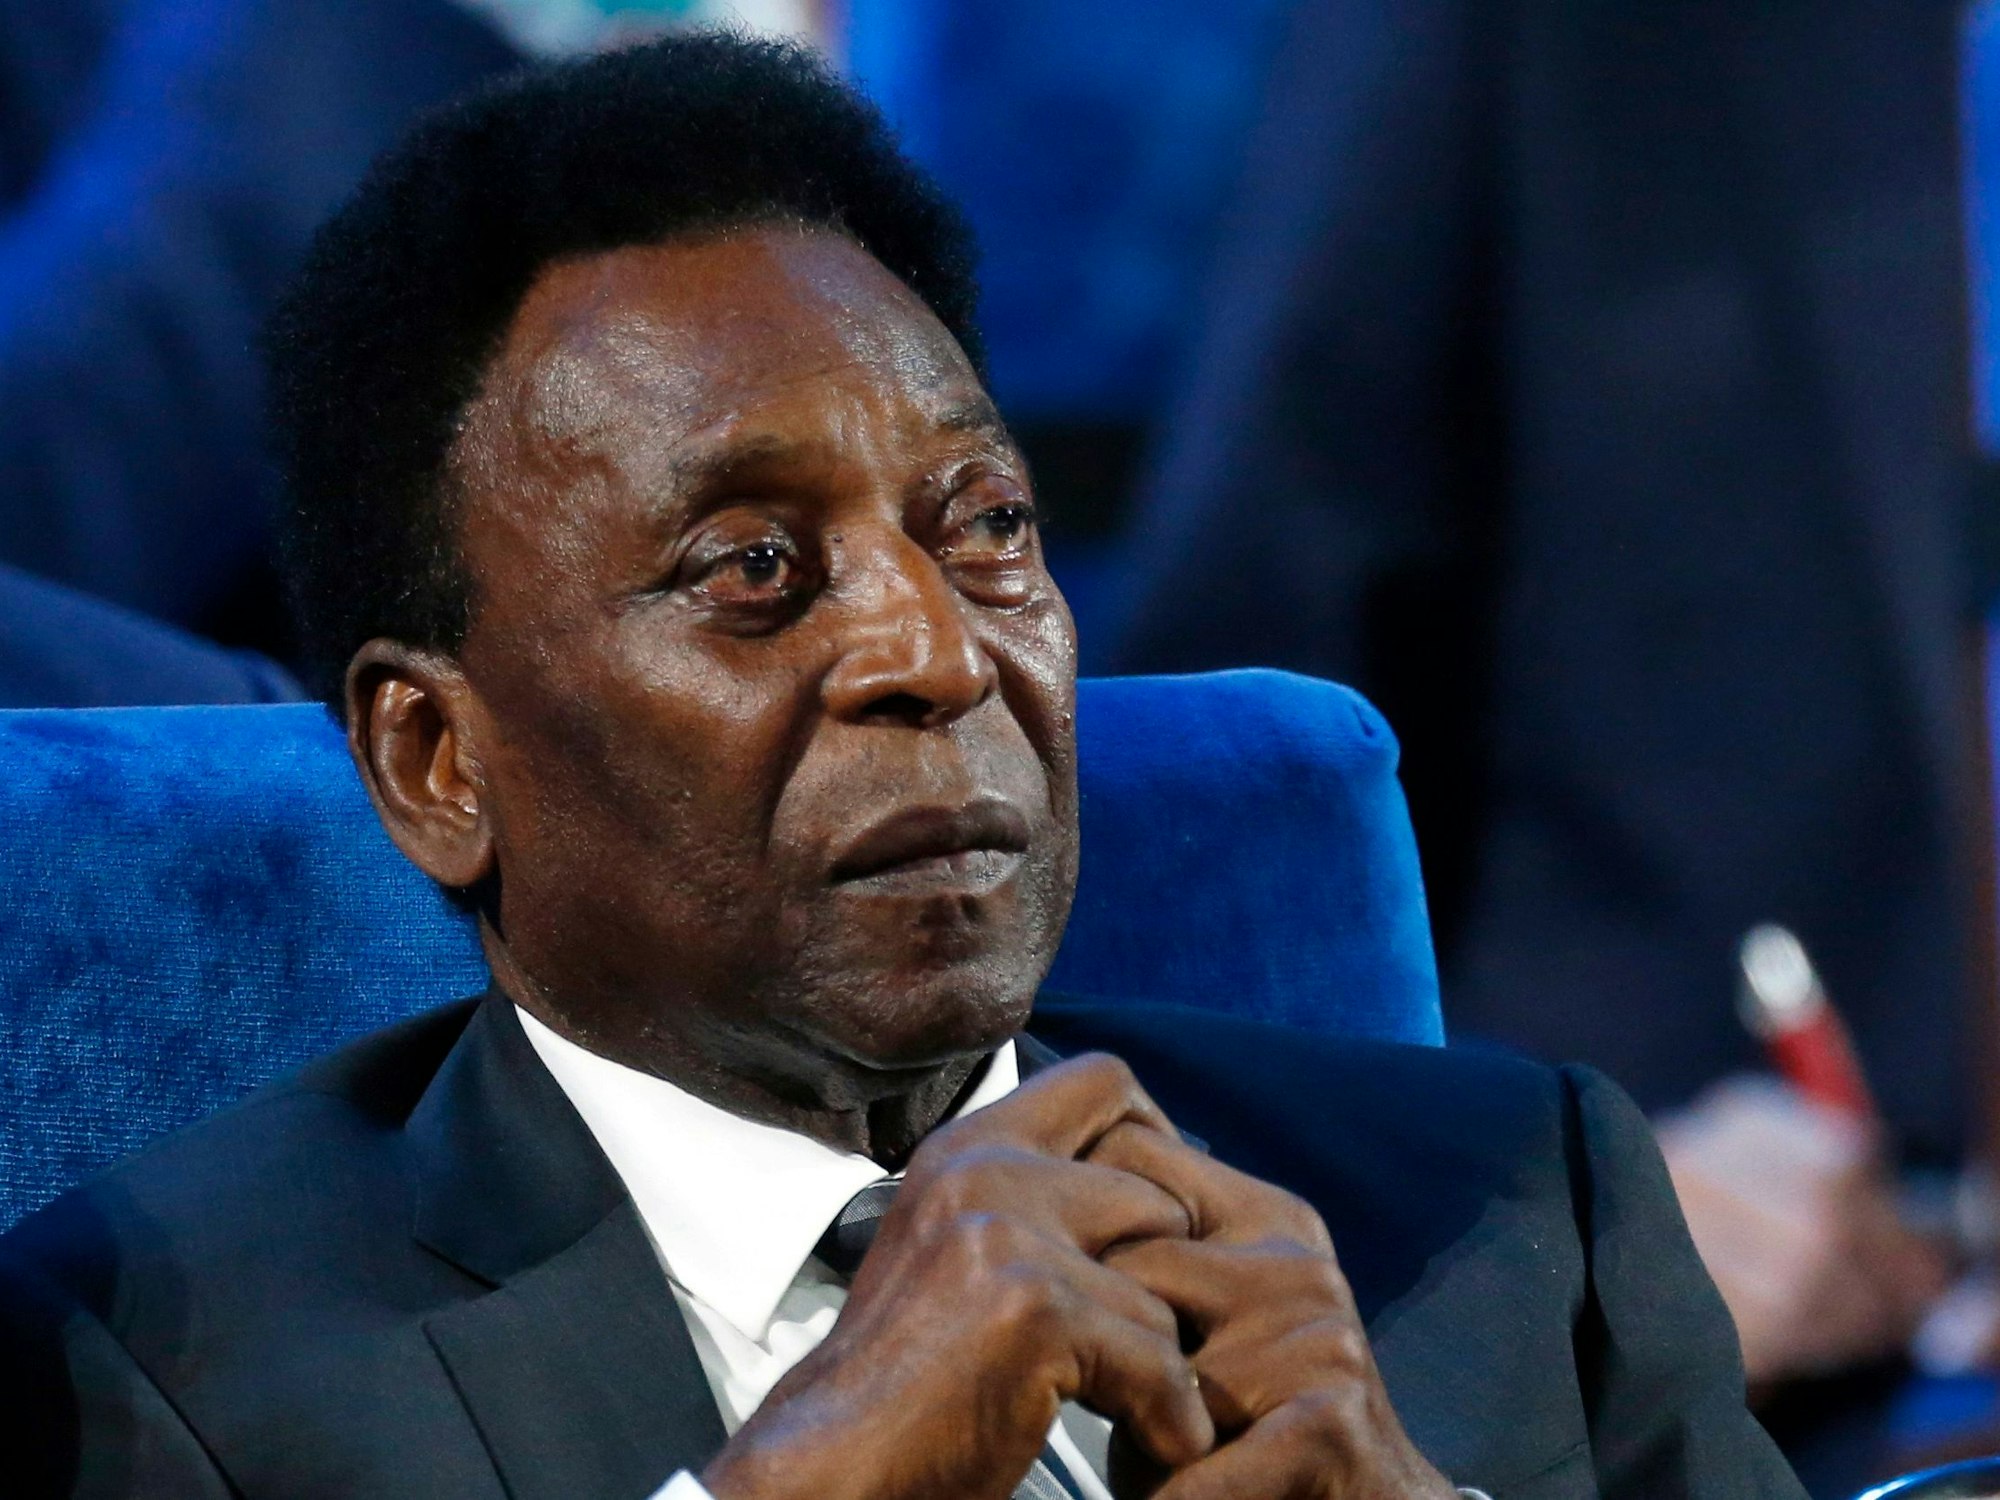 Pelé sitzt auf einer Veranstaltung im Anzug, hält die Hände zusammen.